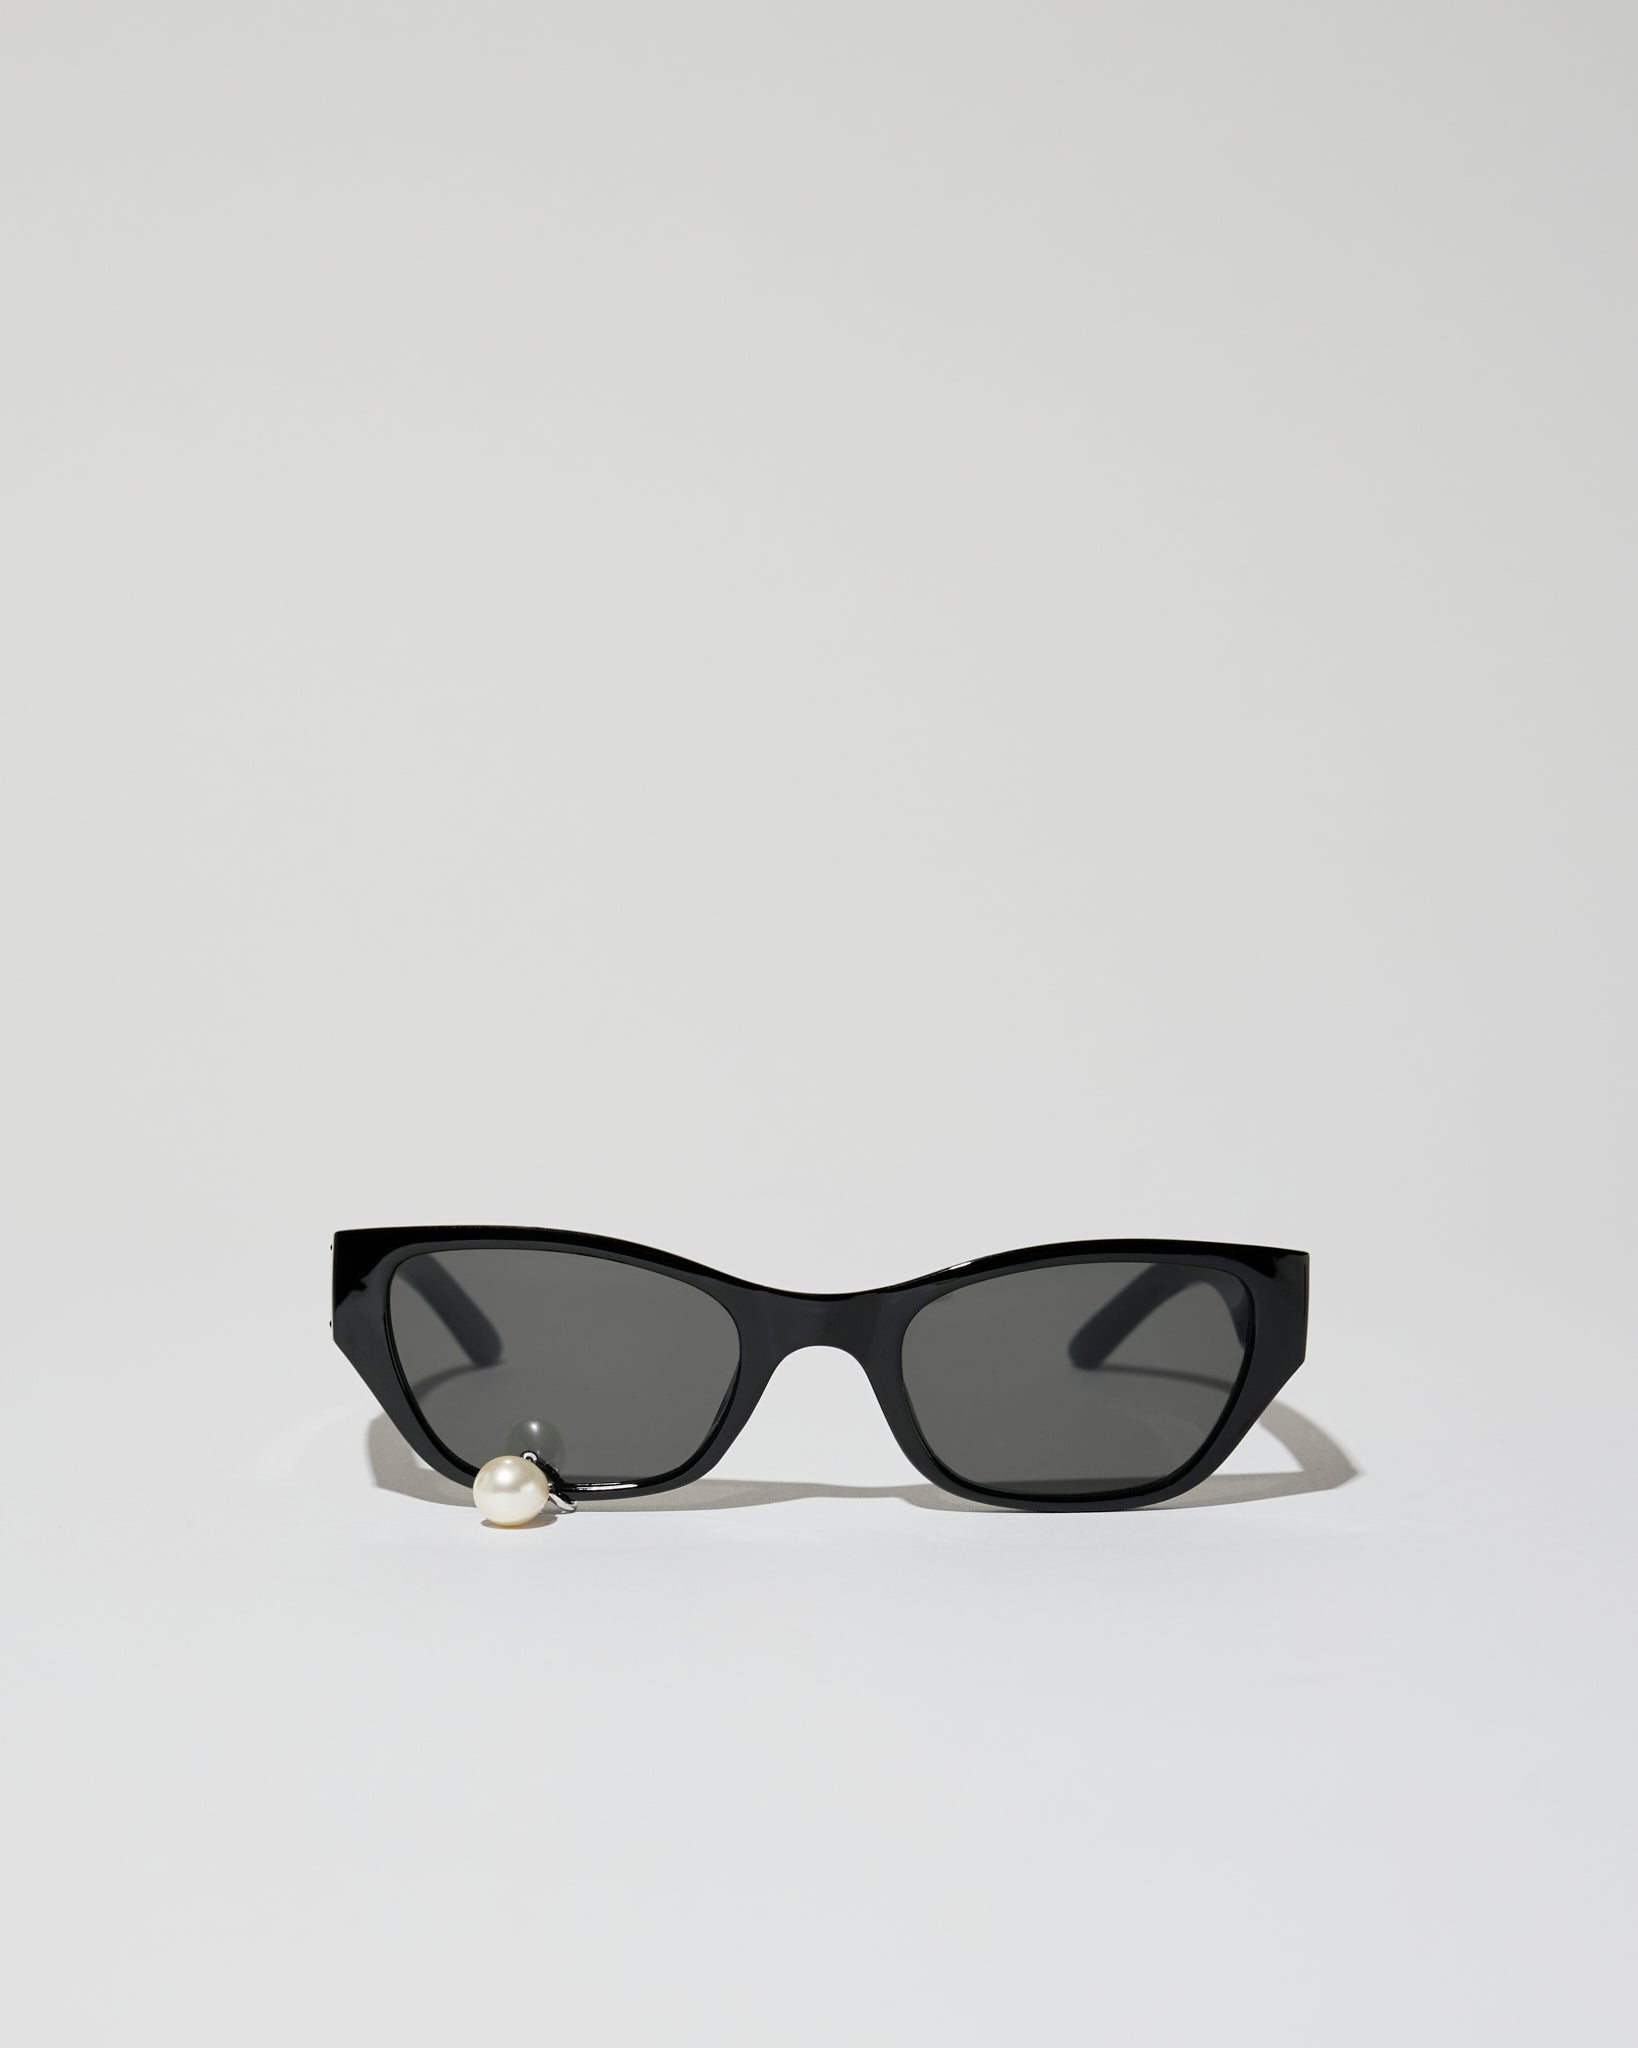 Pearl tear cat-eye acetate sunglasses